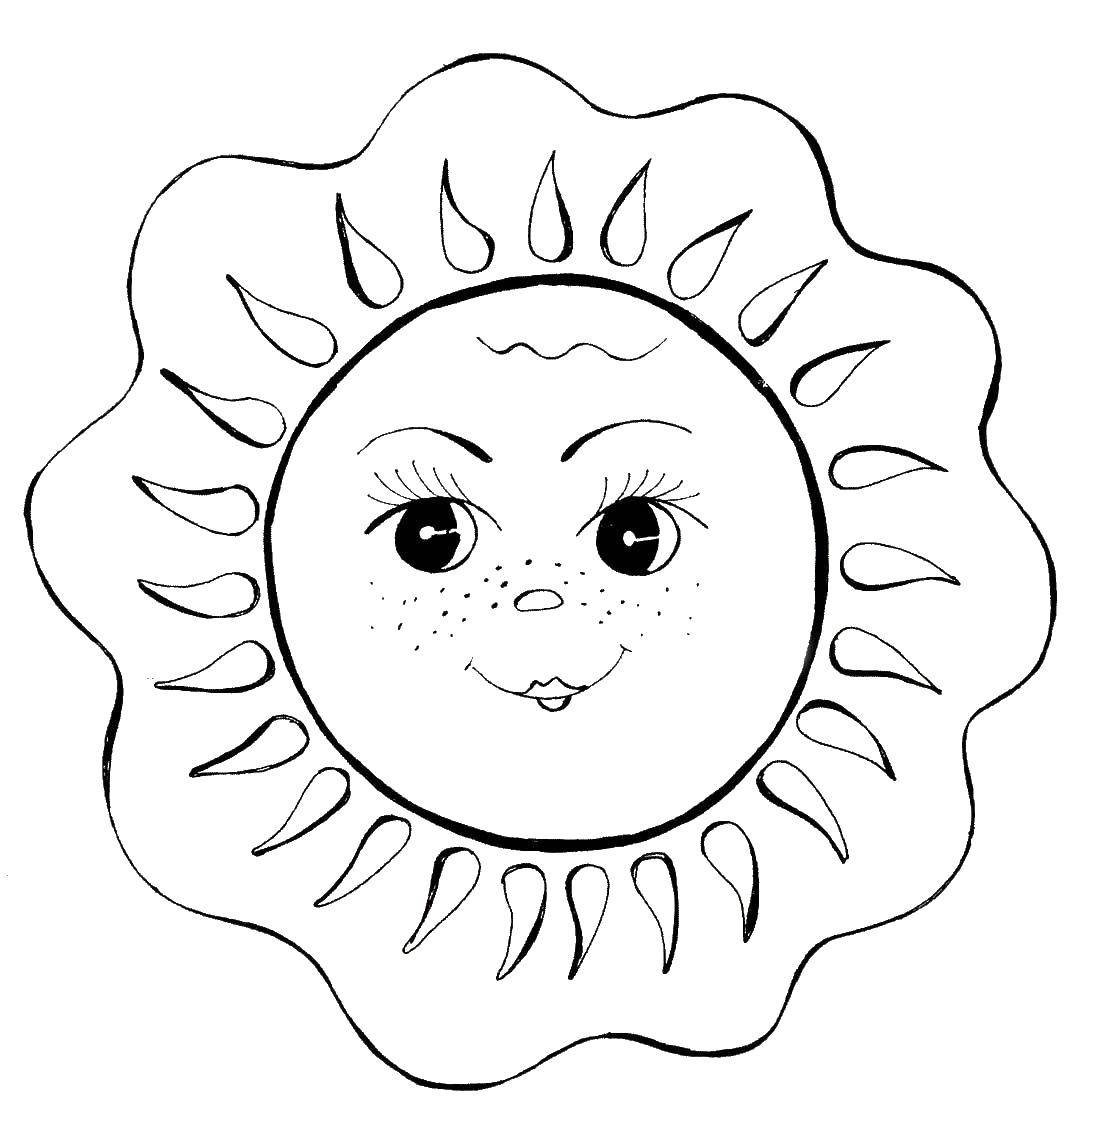 Раскраска Солнце для детей (солнышко)